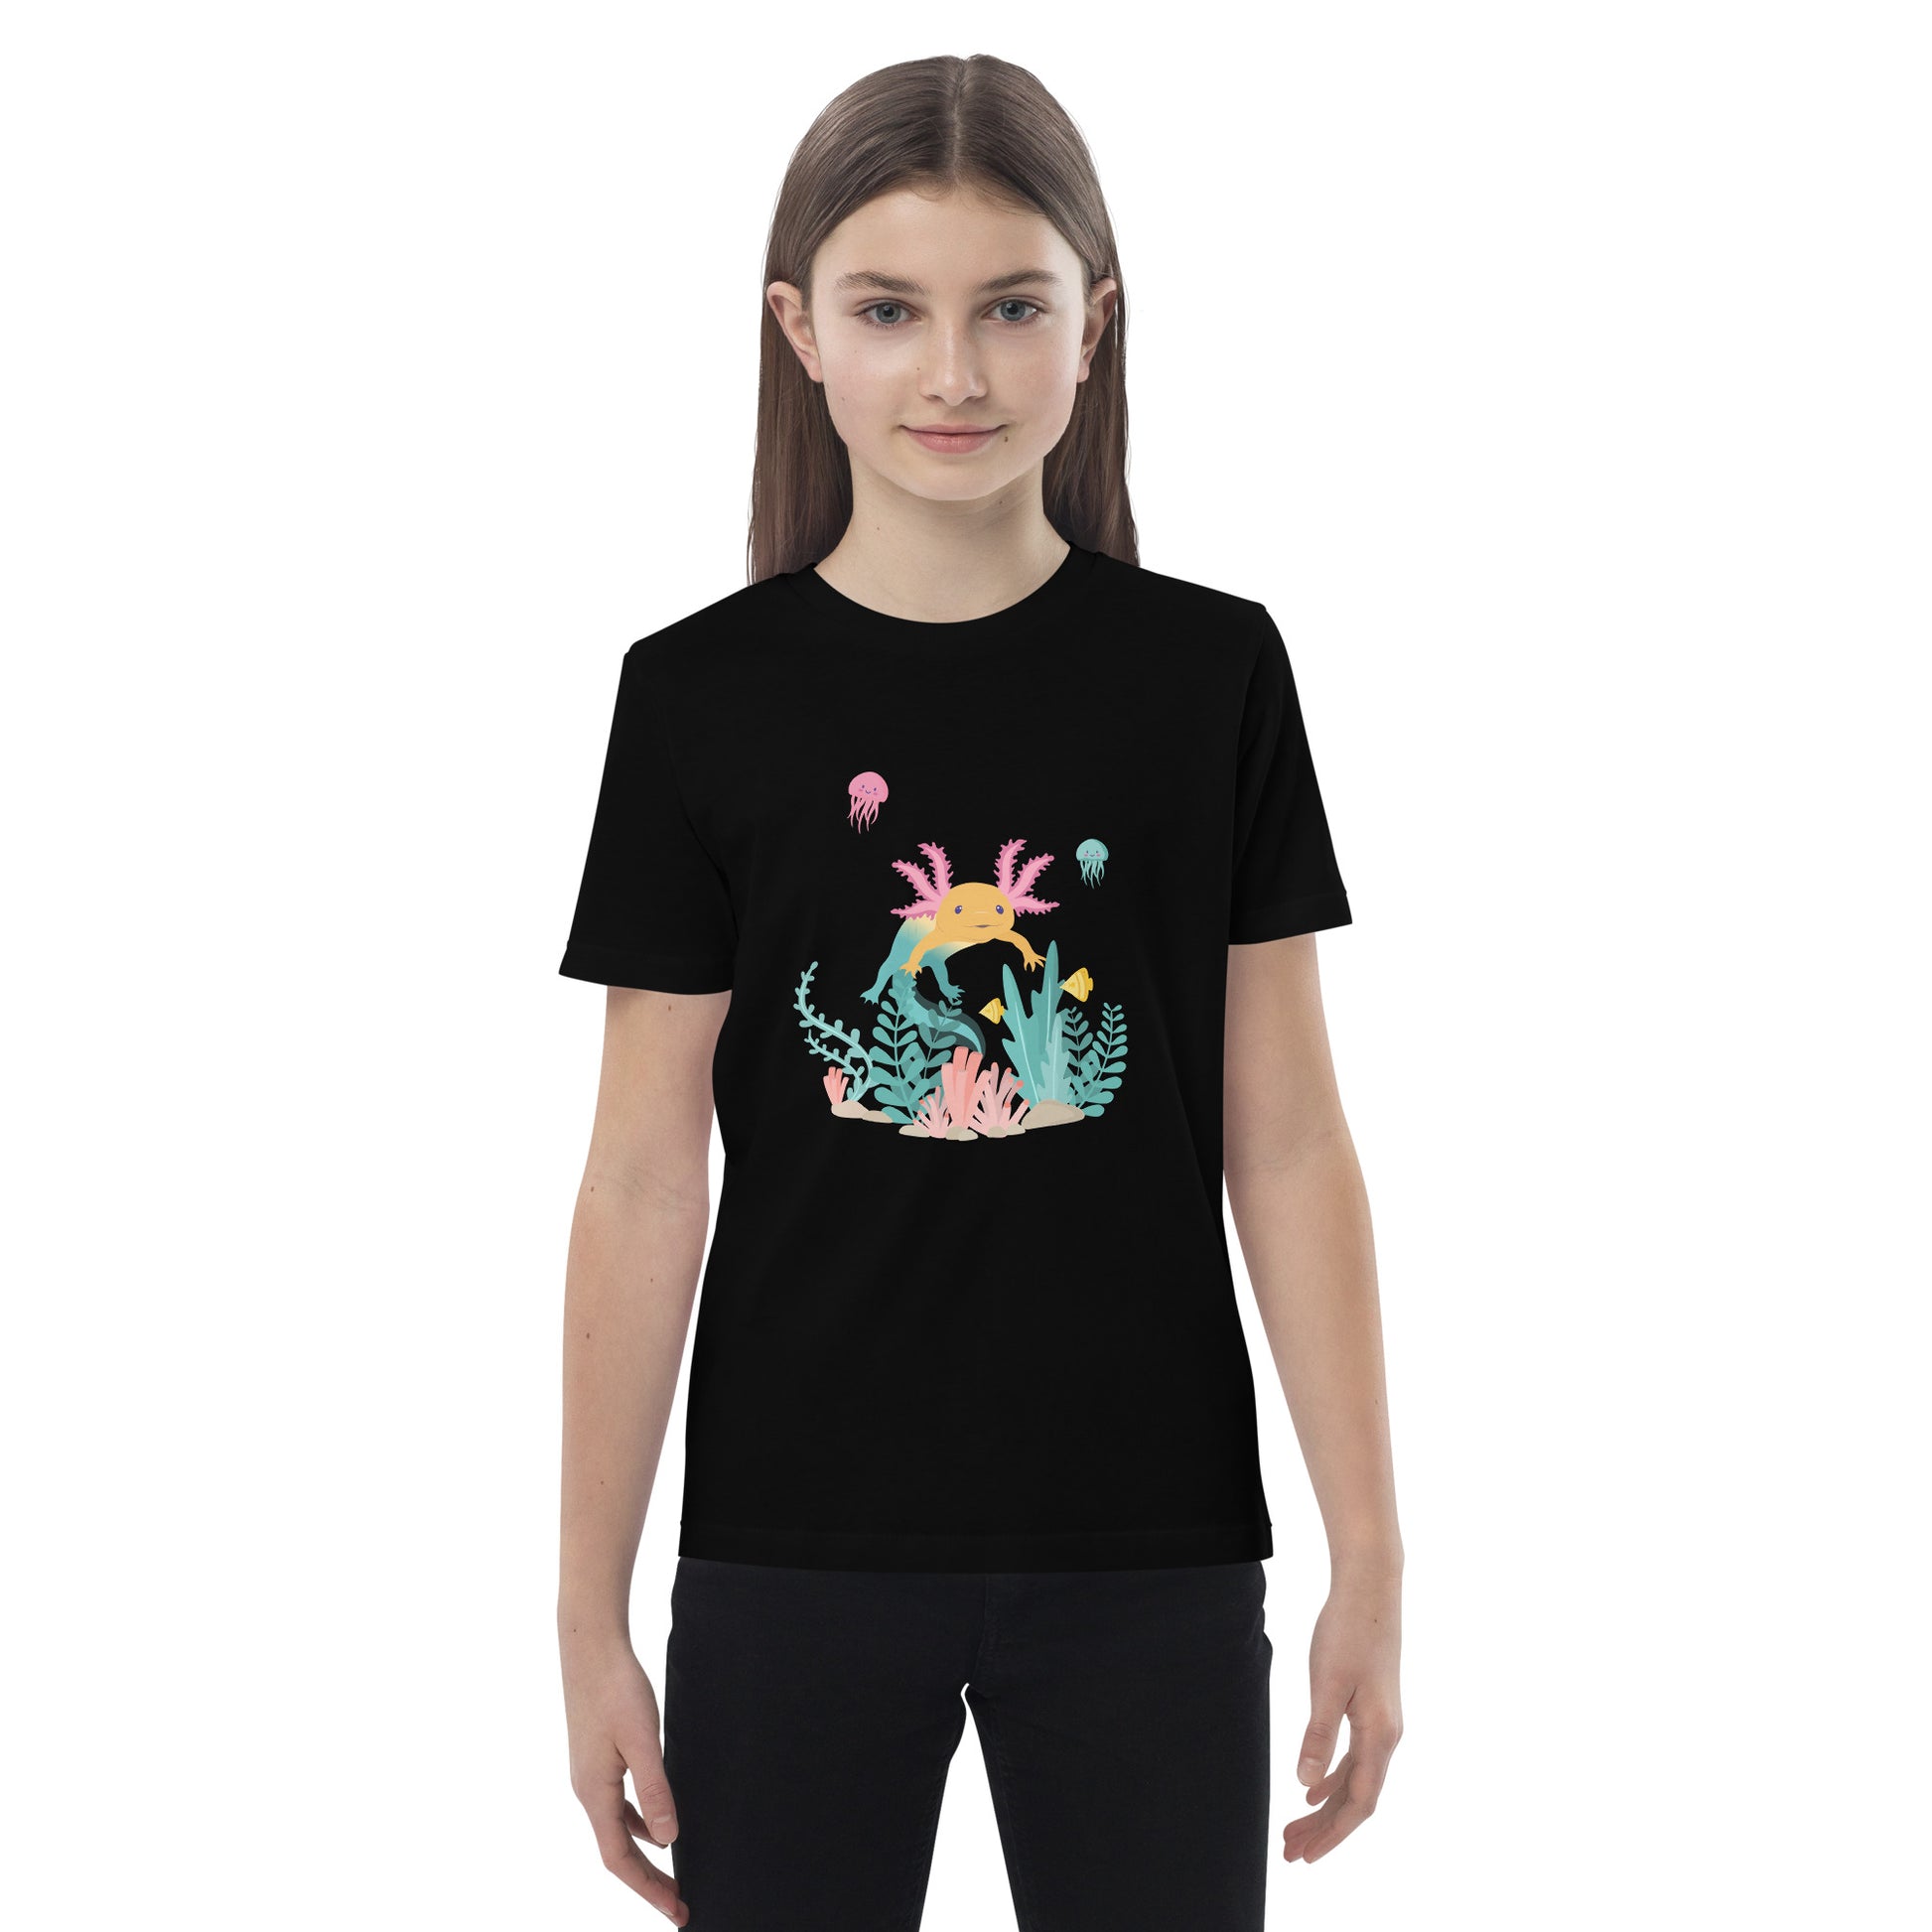 Barn T-shirt i färgen svart. Ekologisk bomull och tryck med axolotlen Axis i bottenmiljö.